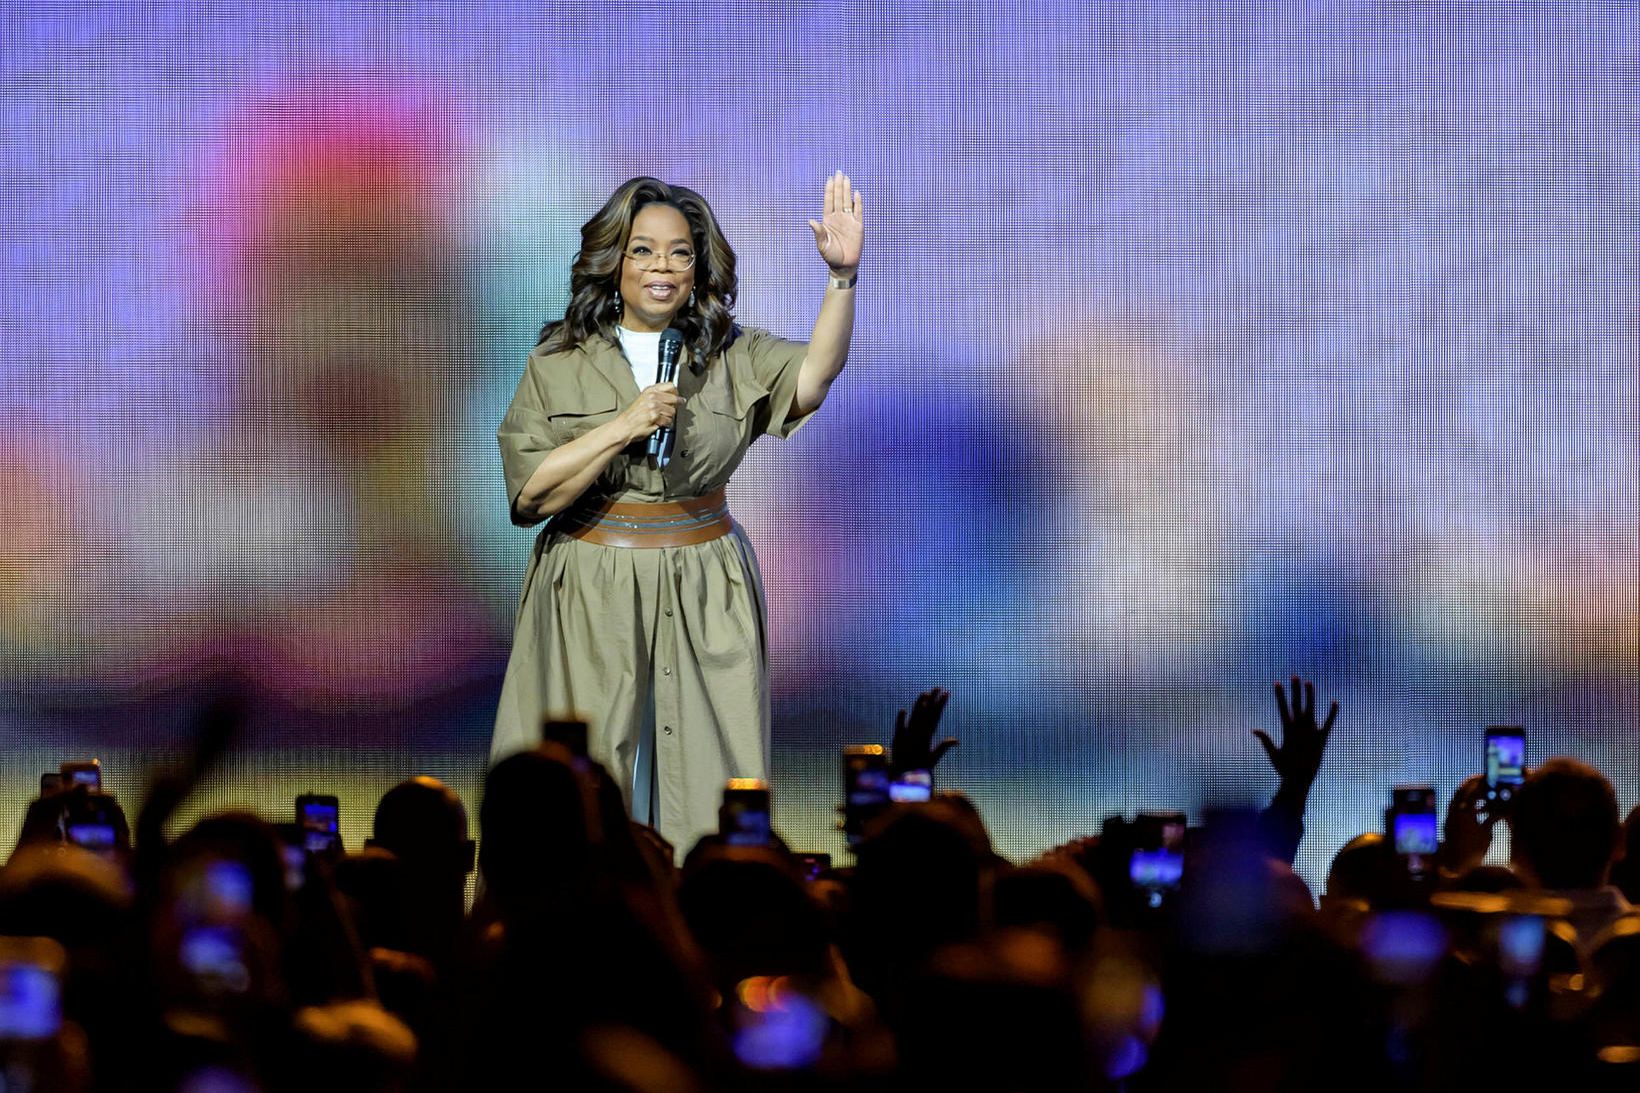 Oprah Winfrey segir ekkert til í þeim sögusögnum að hún …